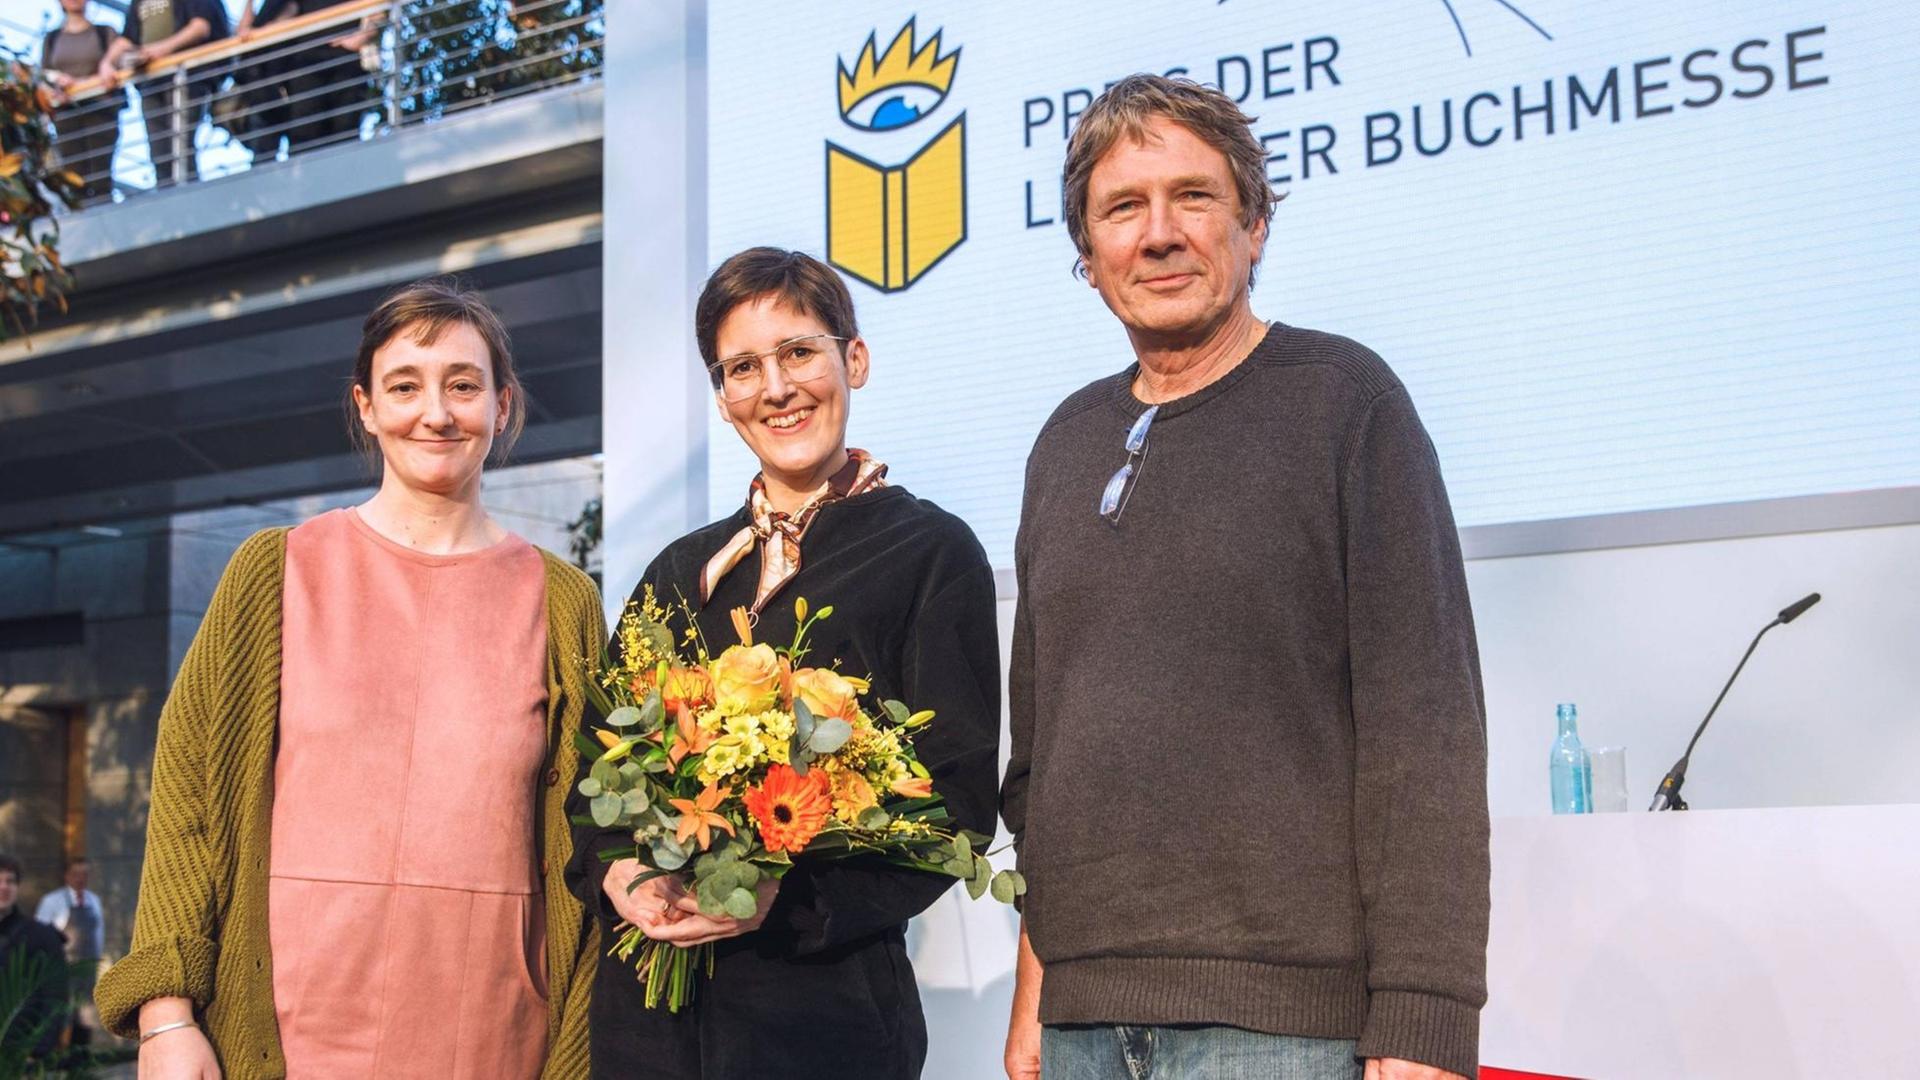 Eva Ruth Wemme, Anke Stelling und Harald Jähner stehen auf einer Bühne.